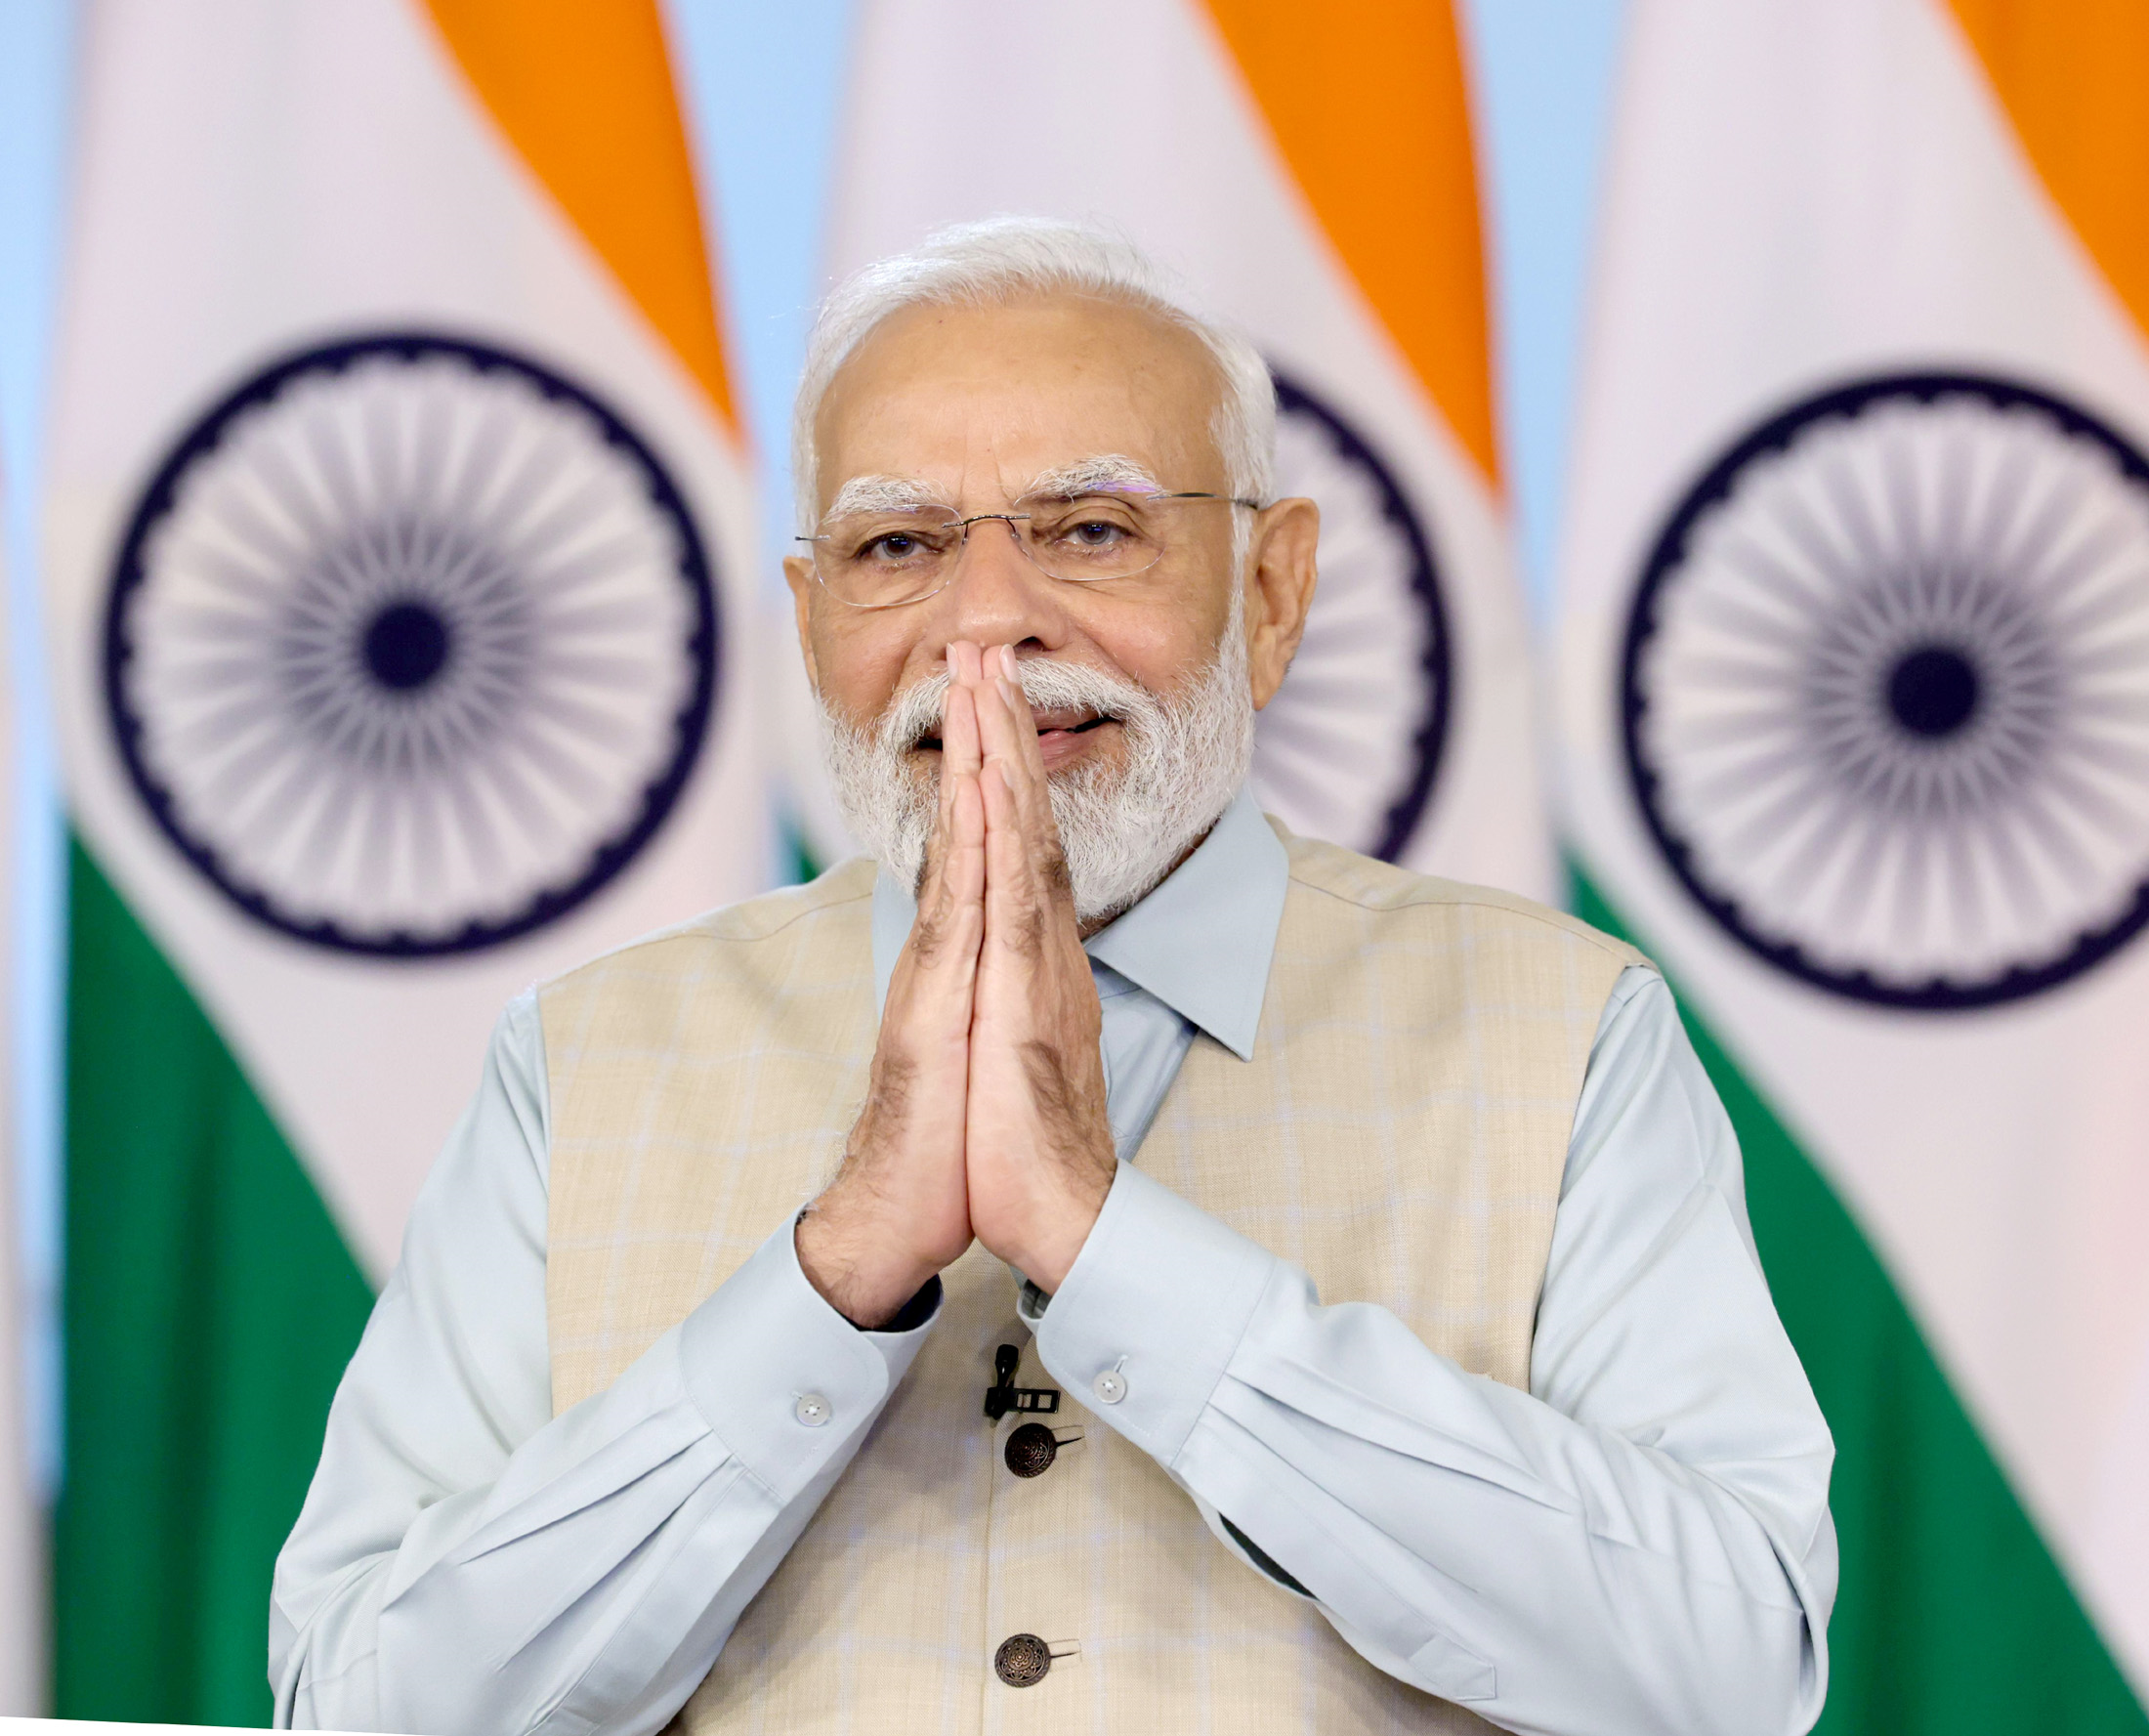 गुजराती नववर्ष पर प्रधानमंत्री नरेंद्र मोदी ने दी शुभकामनाएं